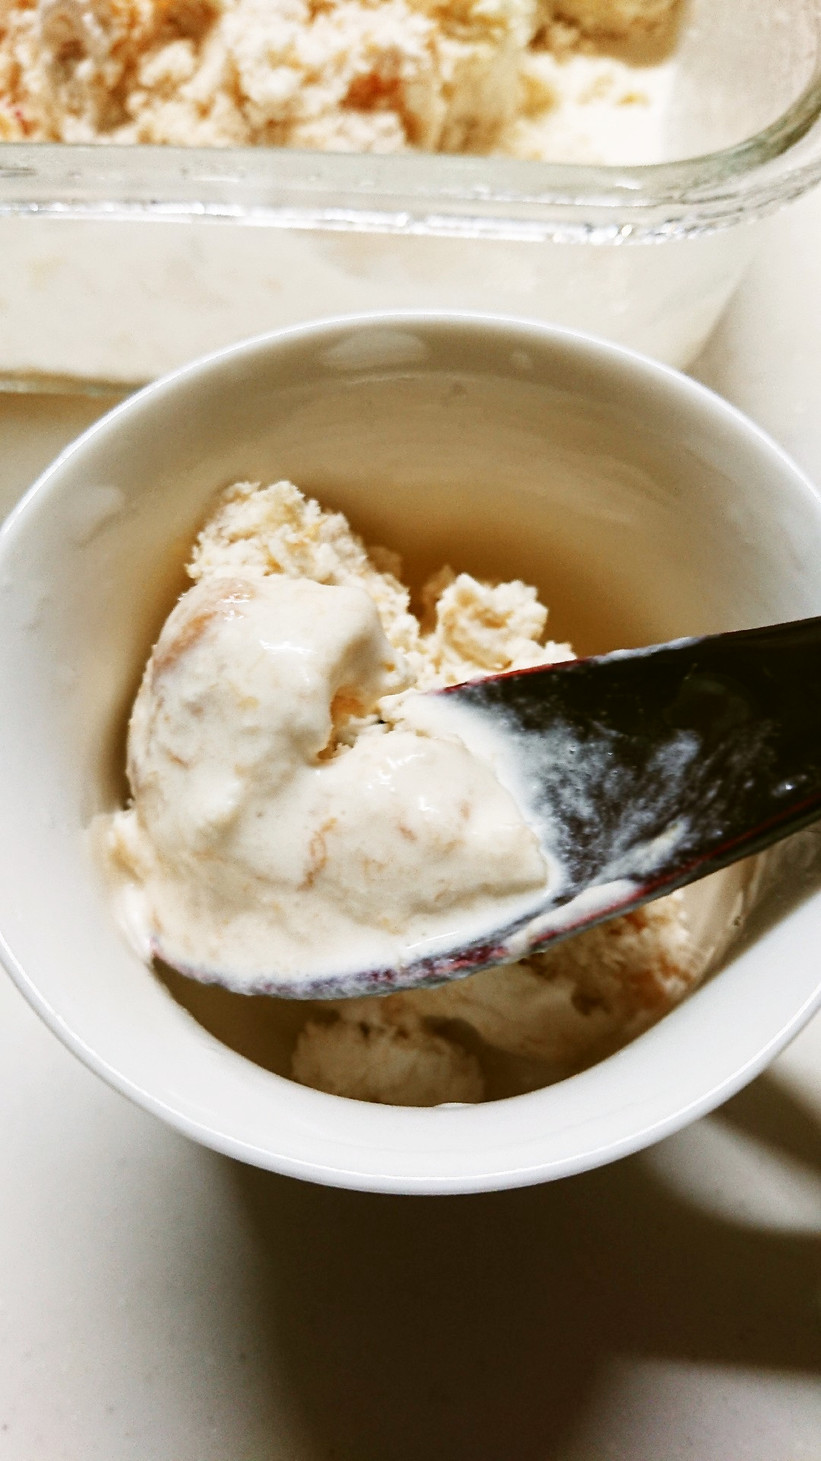 桃のアイスクリームの画像